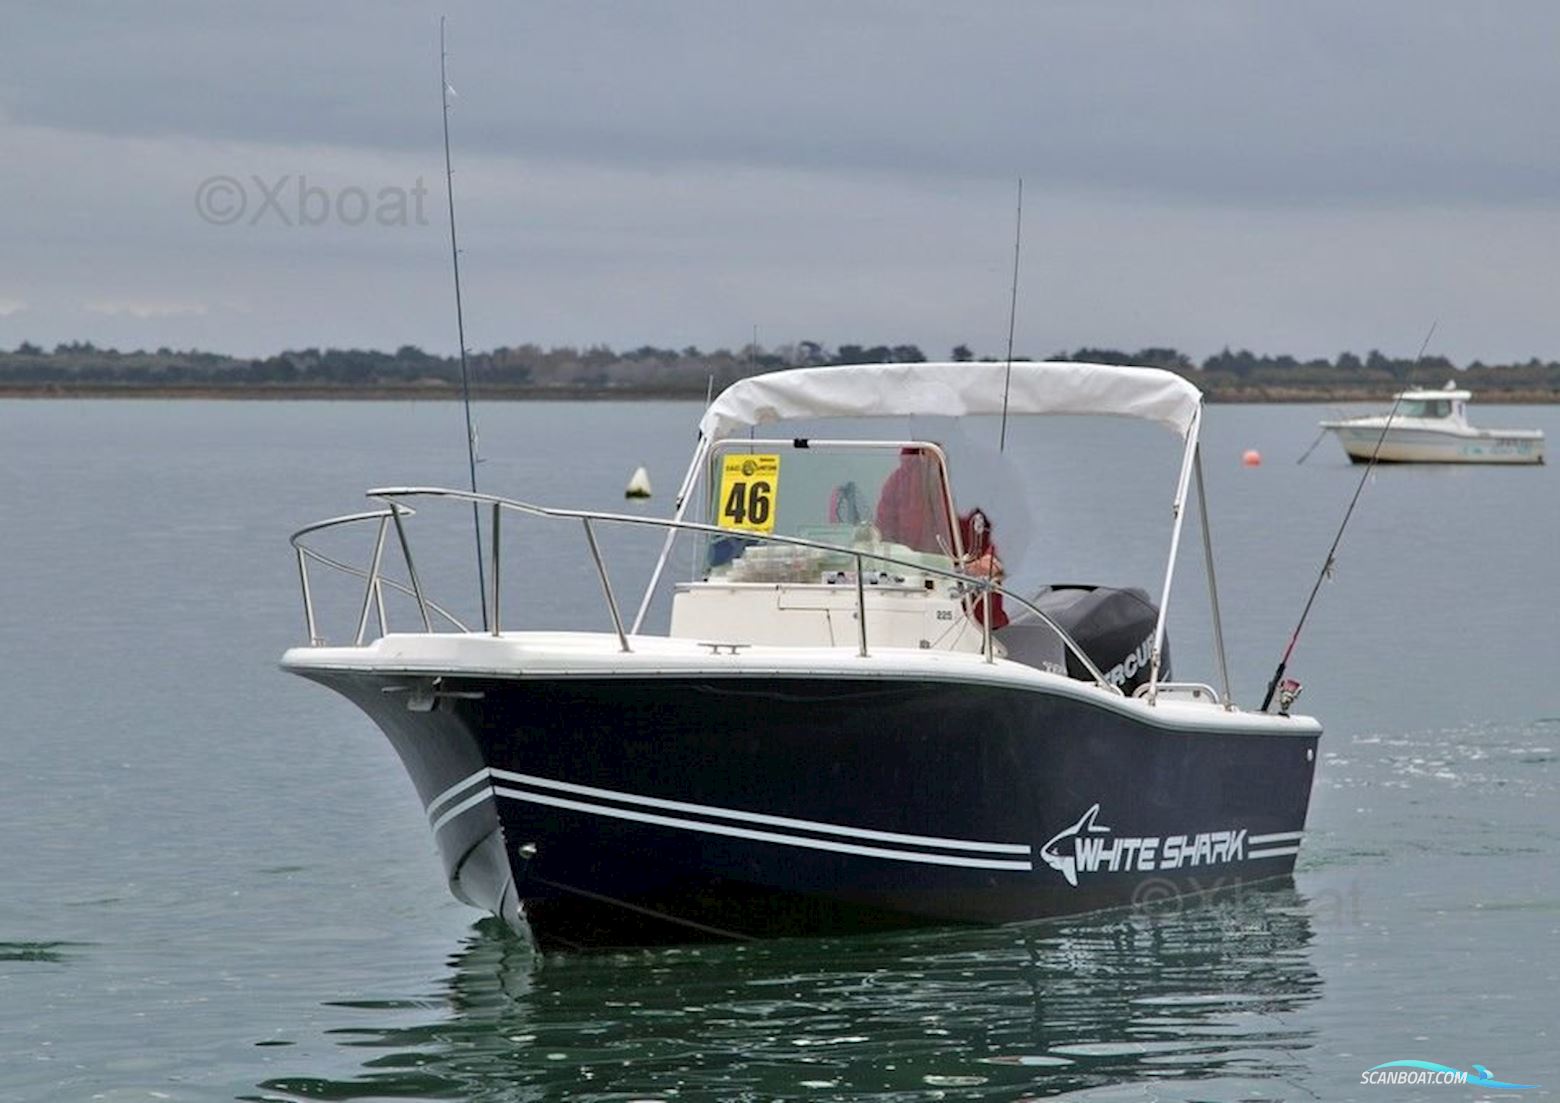 Kelt White Shark 225 Motor boat 2003, with Mercury engine, France